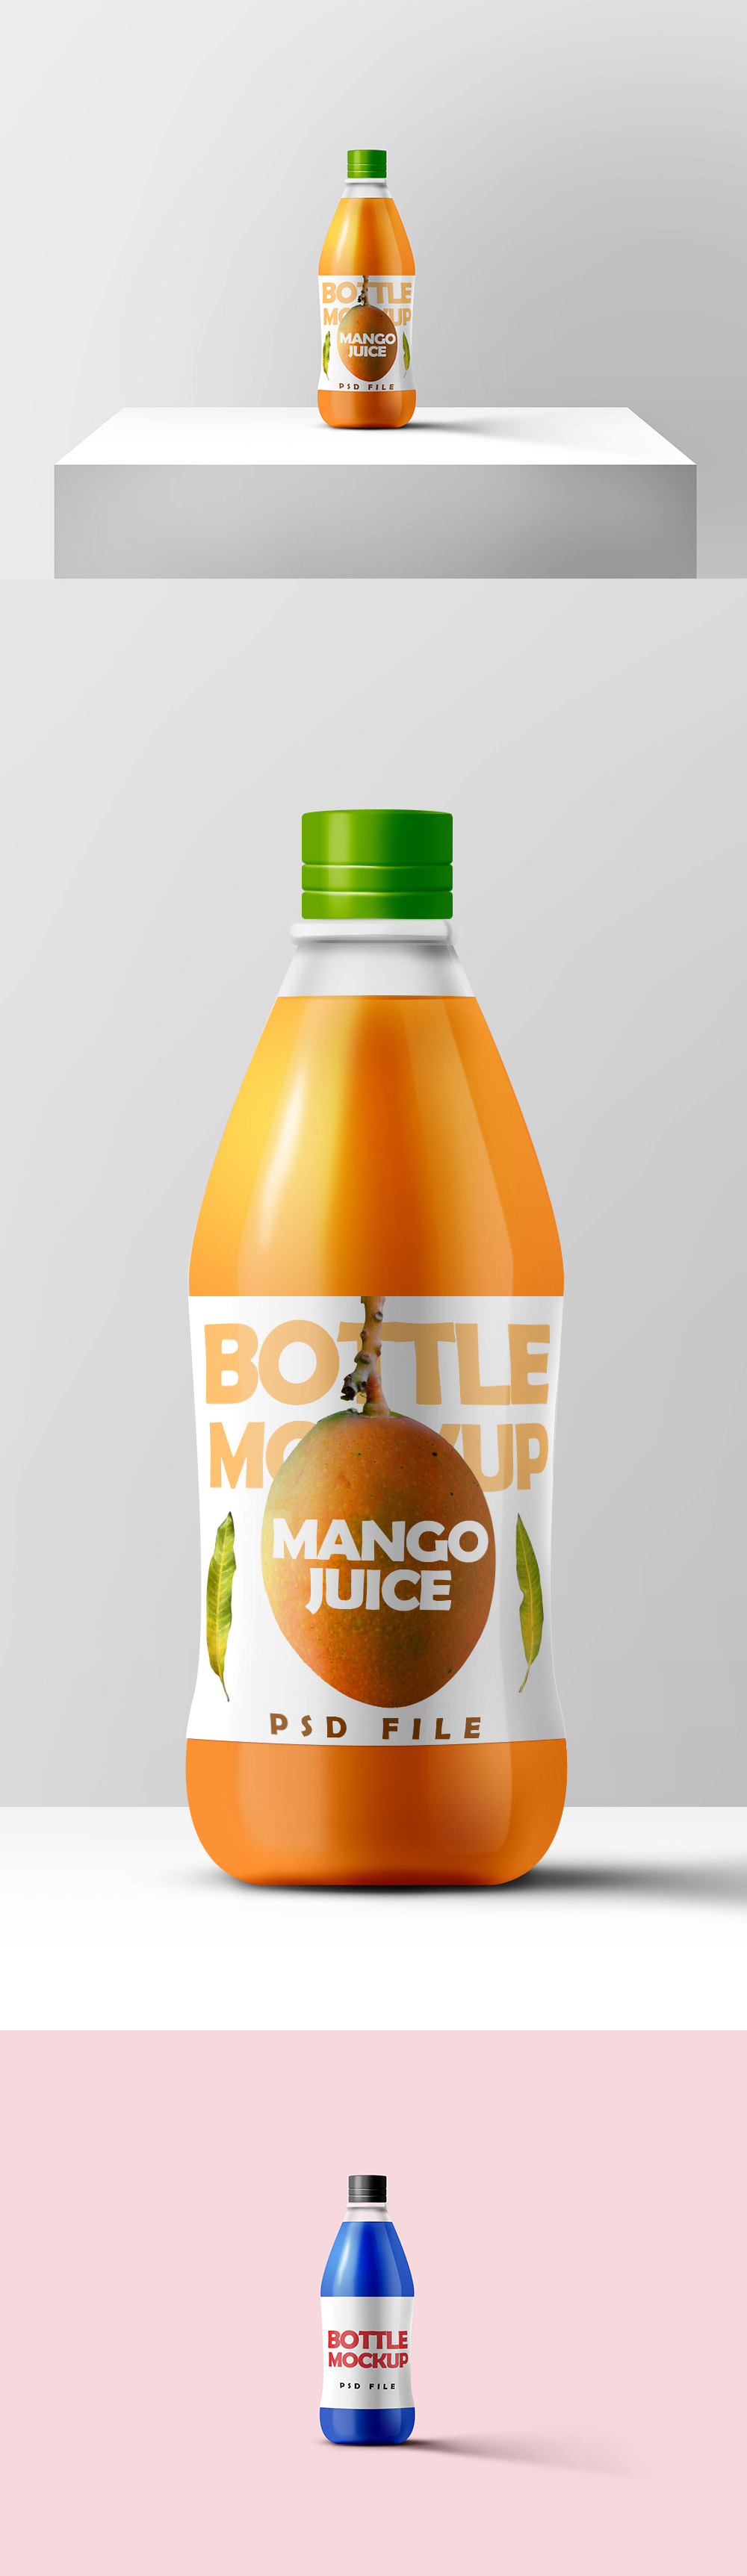 橘汁瓶贴图样机PSD模板Juice Bottle Mocku